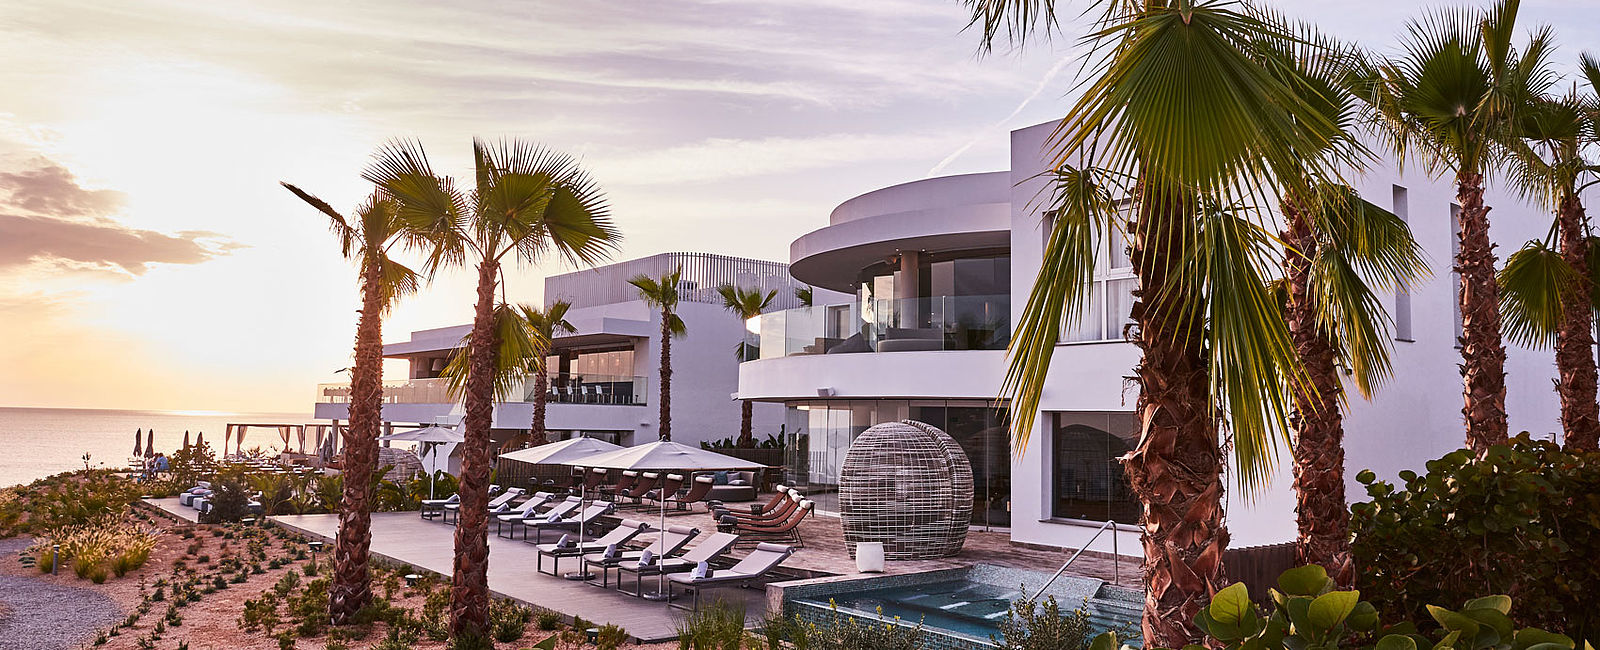 HOTELTEST
 7Pines Ibiza 
 der neue Sunset Hotspot auf der Insel 